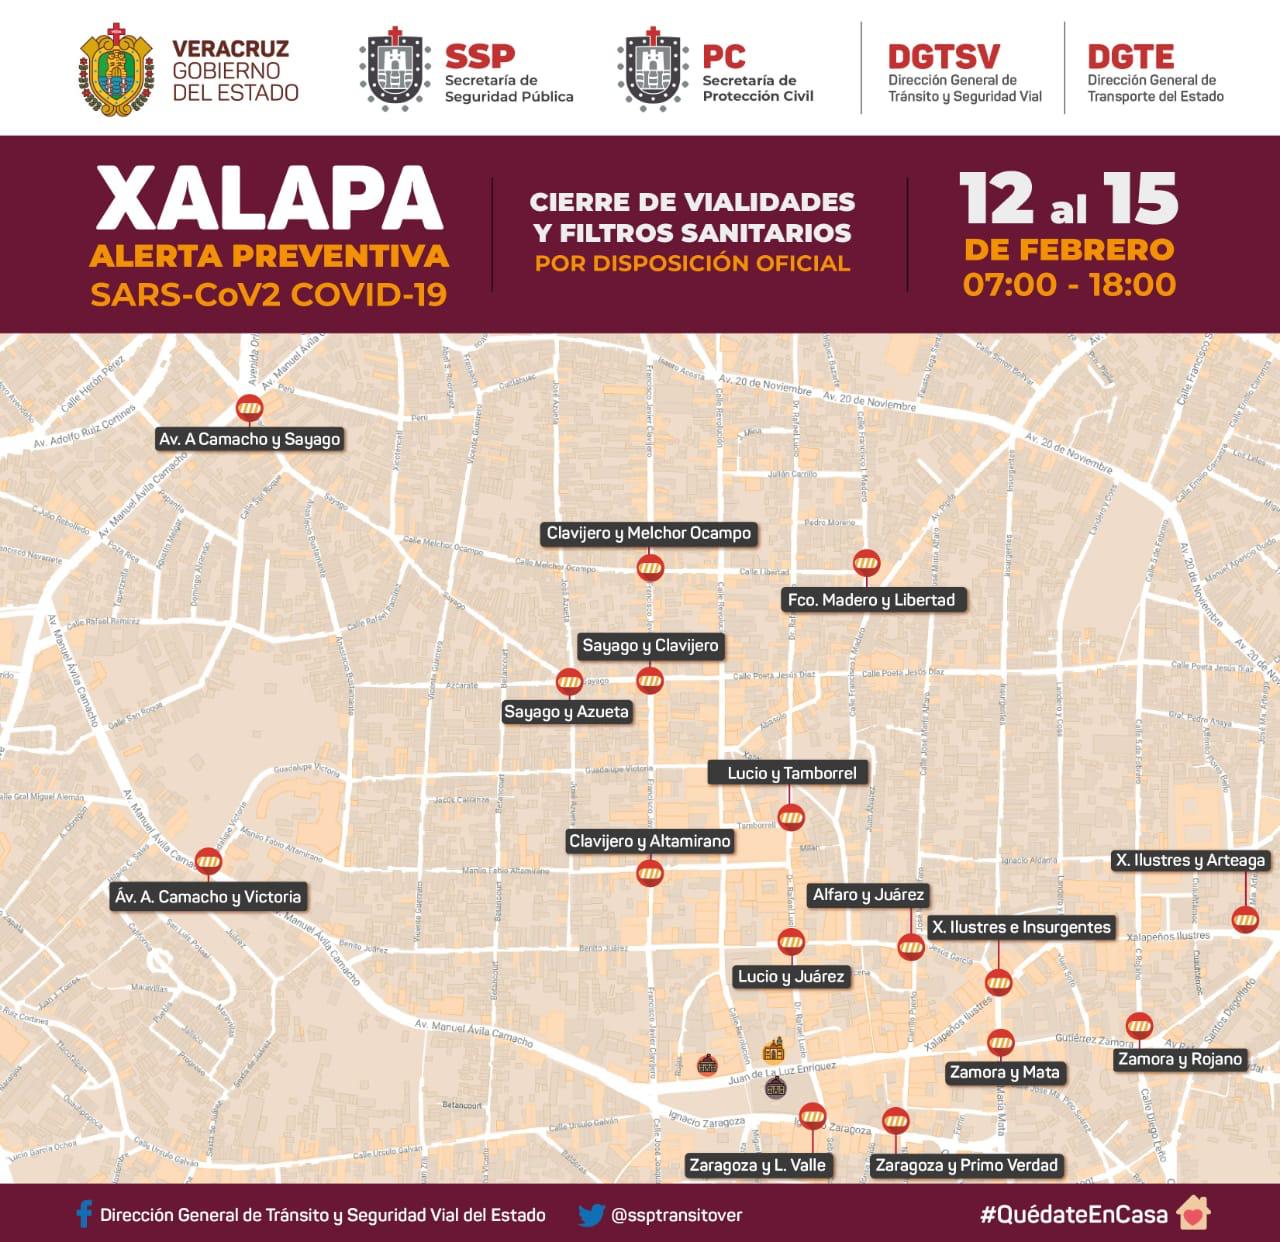 Tomar previsiones ante cierre de vialidades en Xalapa del 12 al 15 de febrero